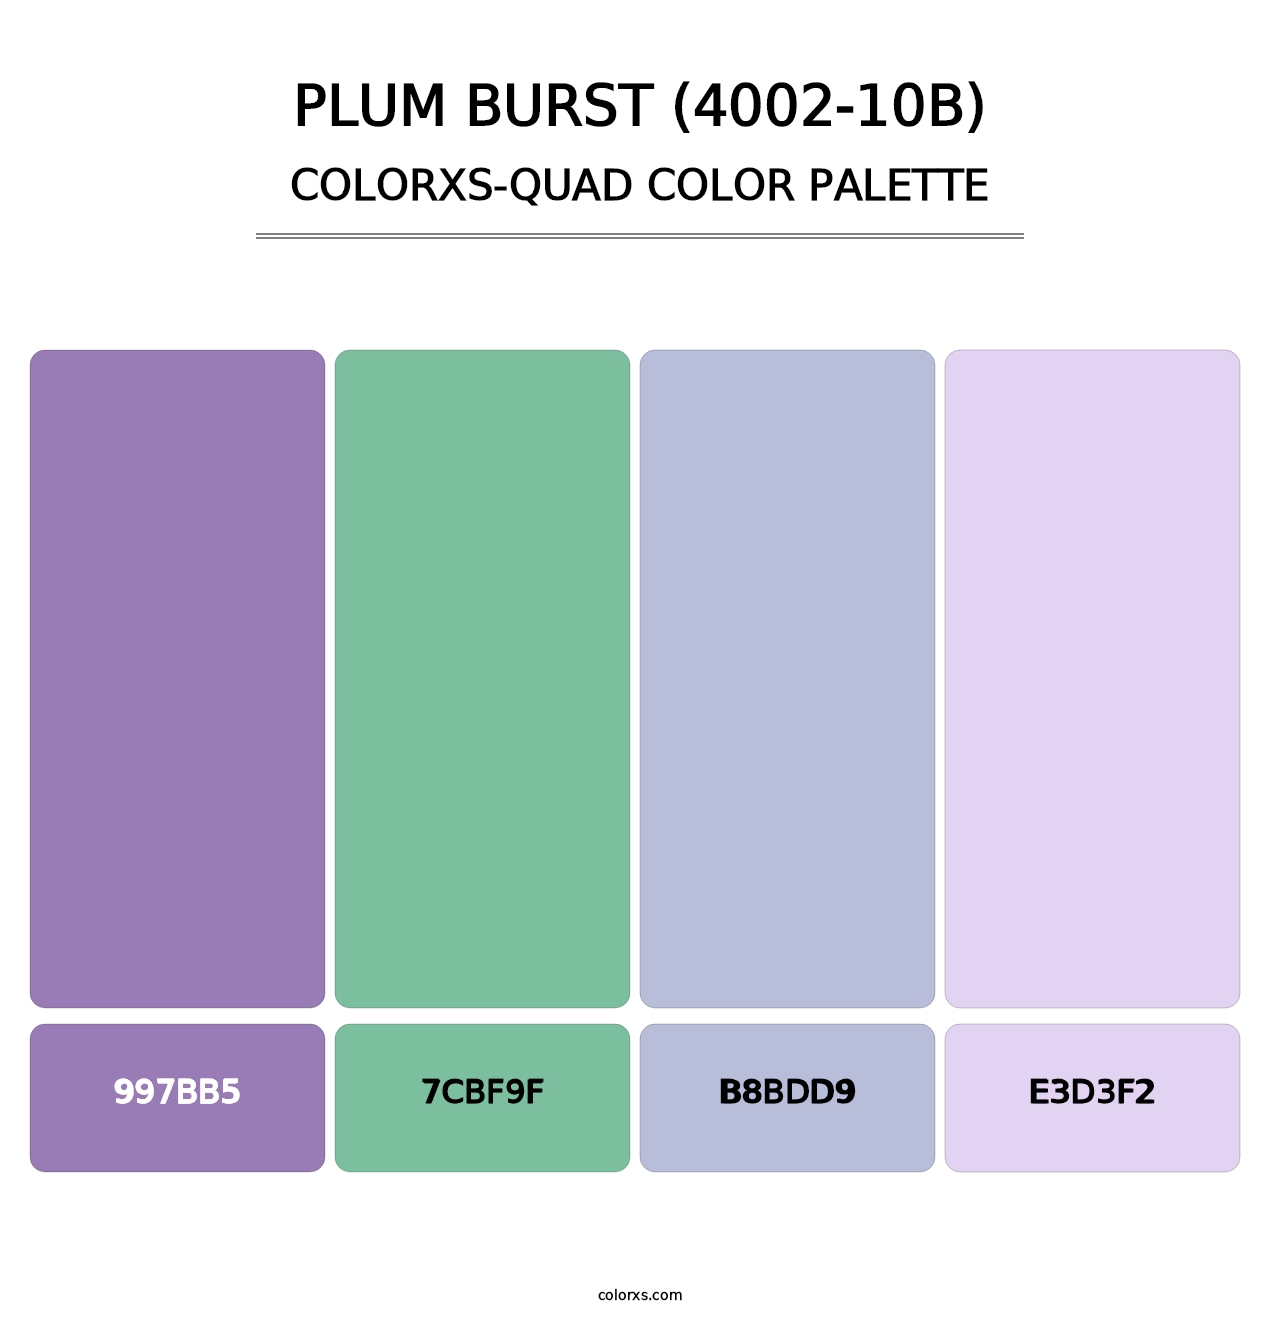 Plum Burst (4002-10B) - Colorxs Quad Palette